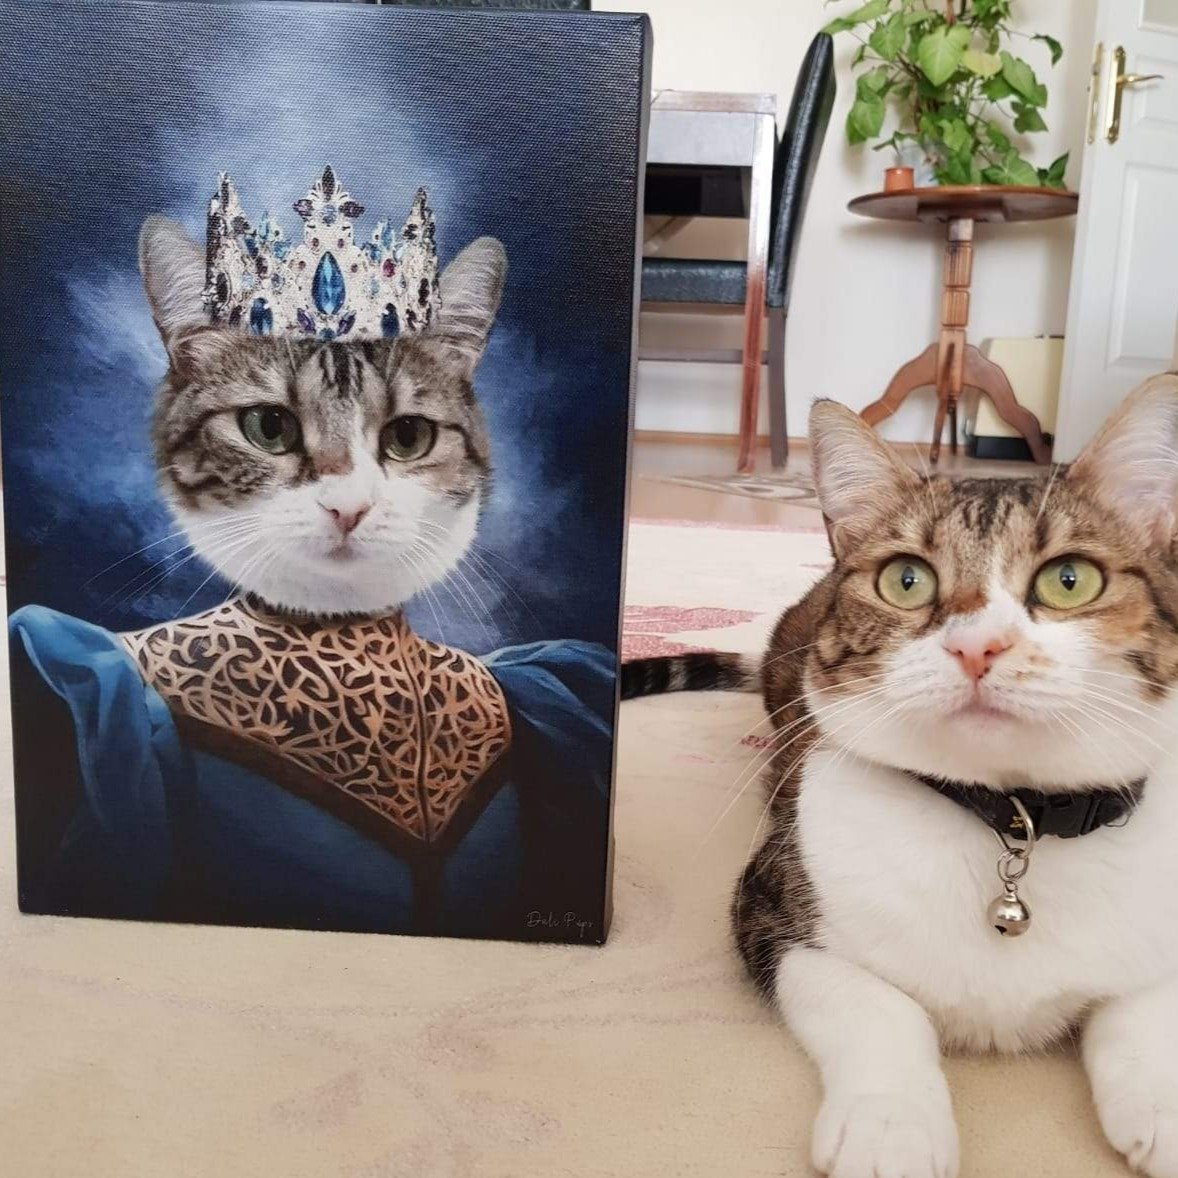 Prenses kedi tablosu yaptırmak mı istiyorsun? Prenses kedi tablosu evinize rönesans esintileri getirecek. Kişiye özel kedi tablosu yaptırmak için sitemizi ziyaret et.